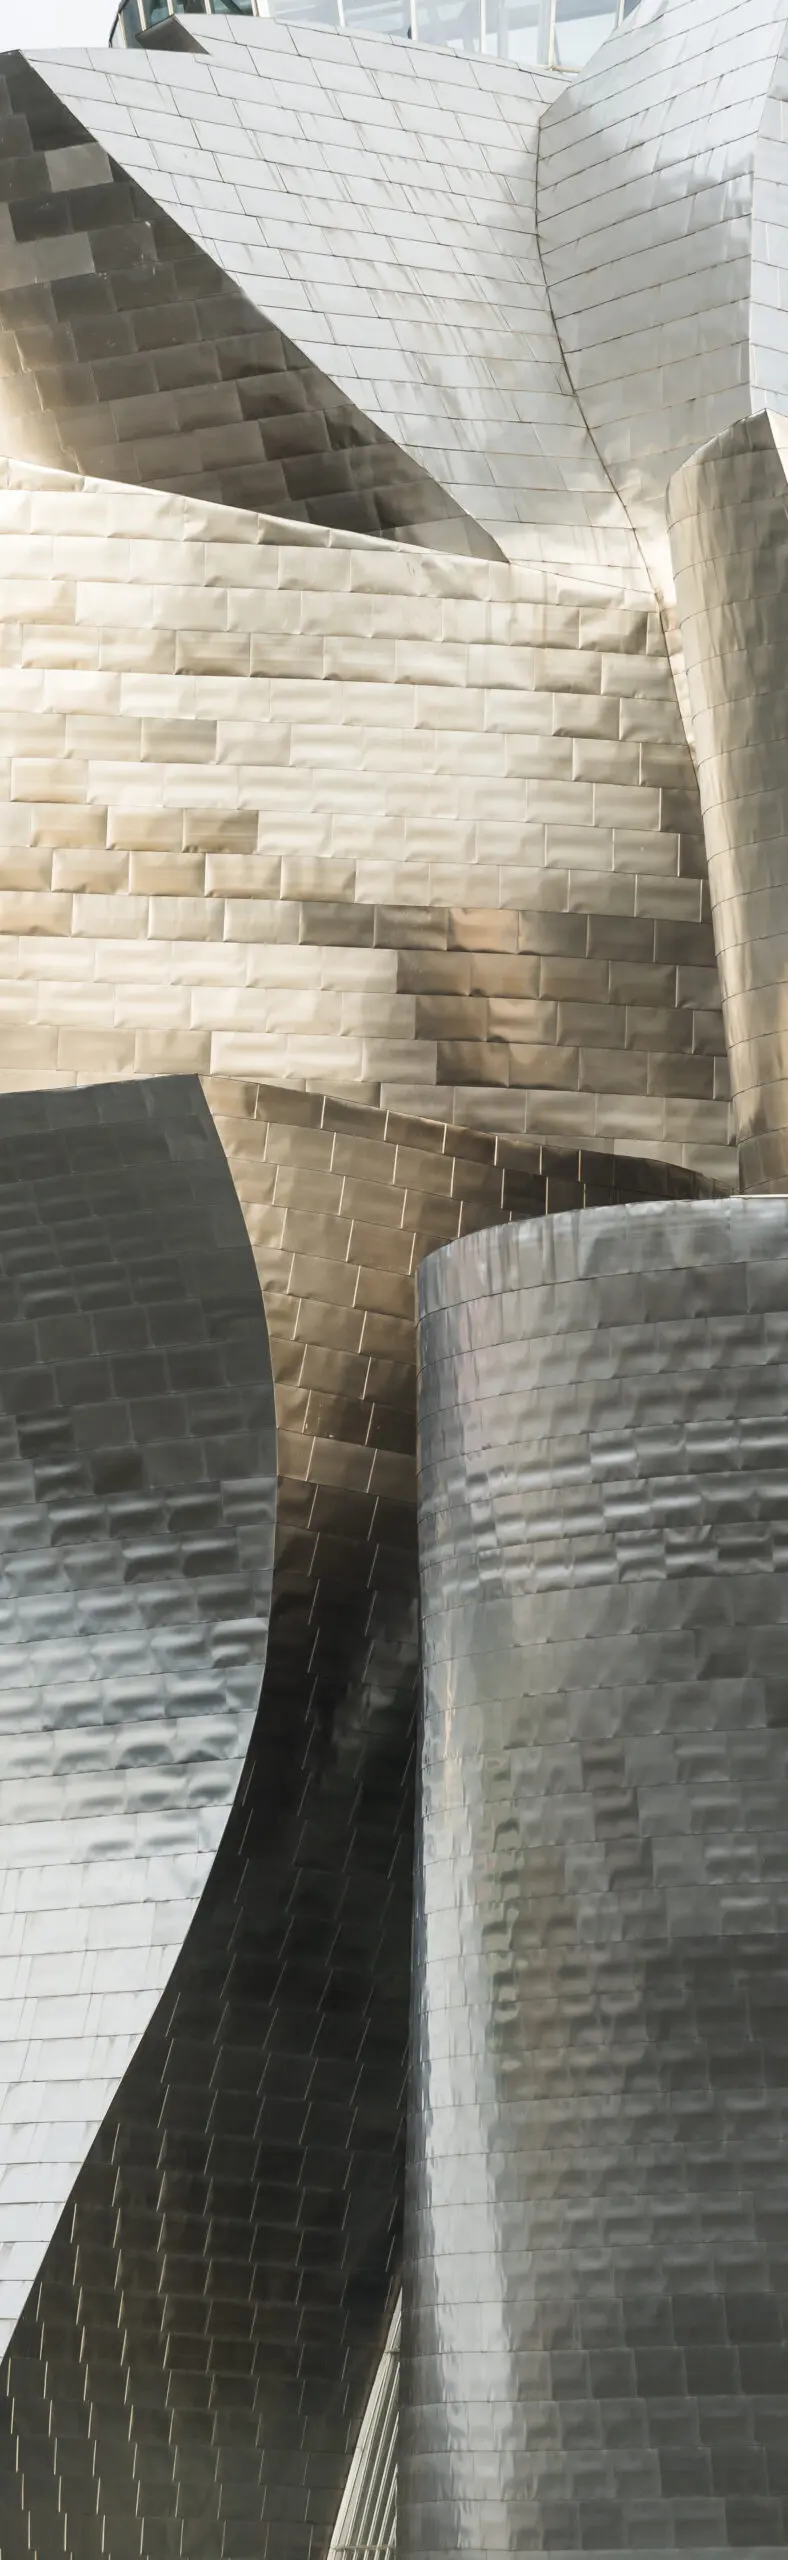 Wandbild (3132) Guggenheim Bilbao präsentiert: Architektur,Detailaufnahmen,Sehenswürdigkeiten